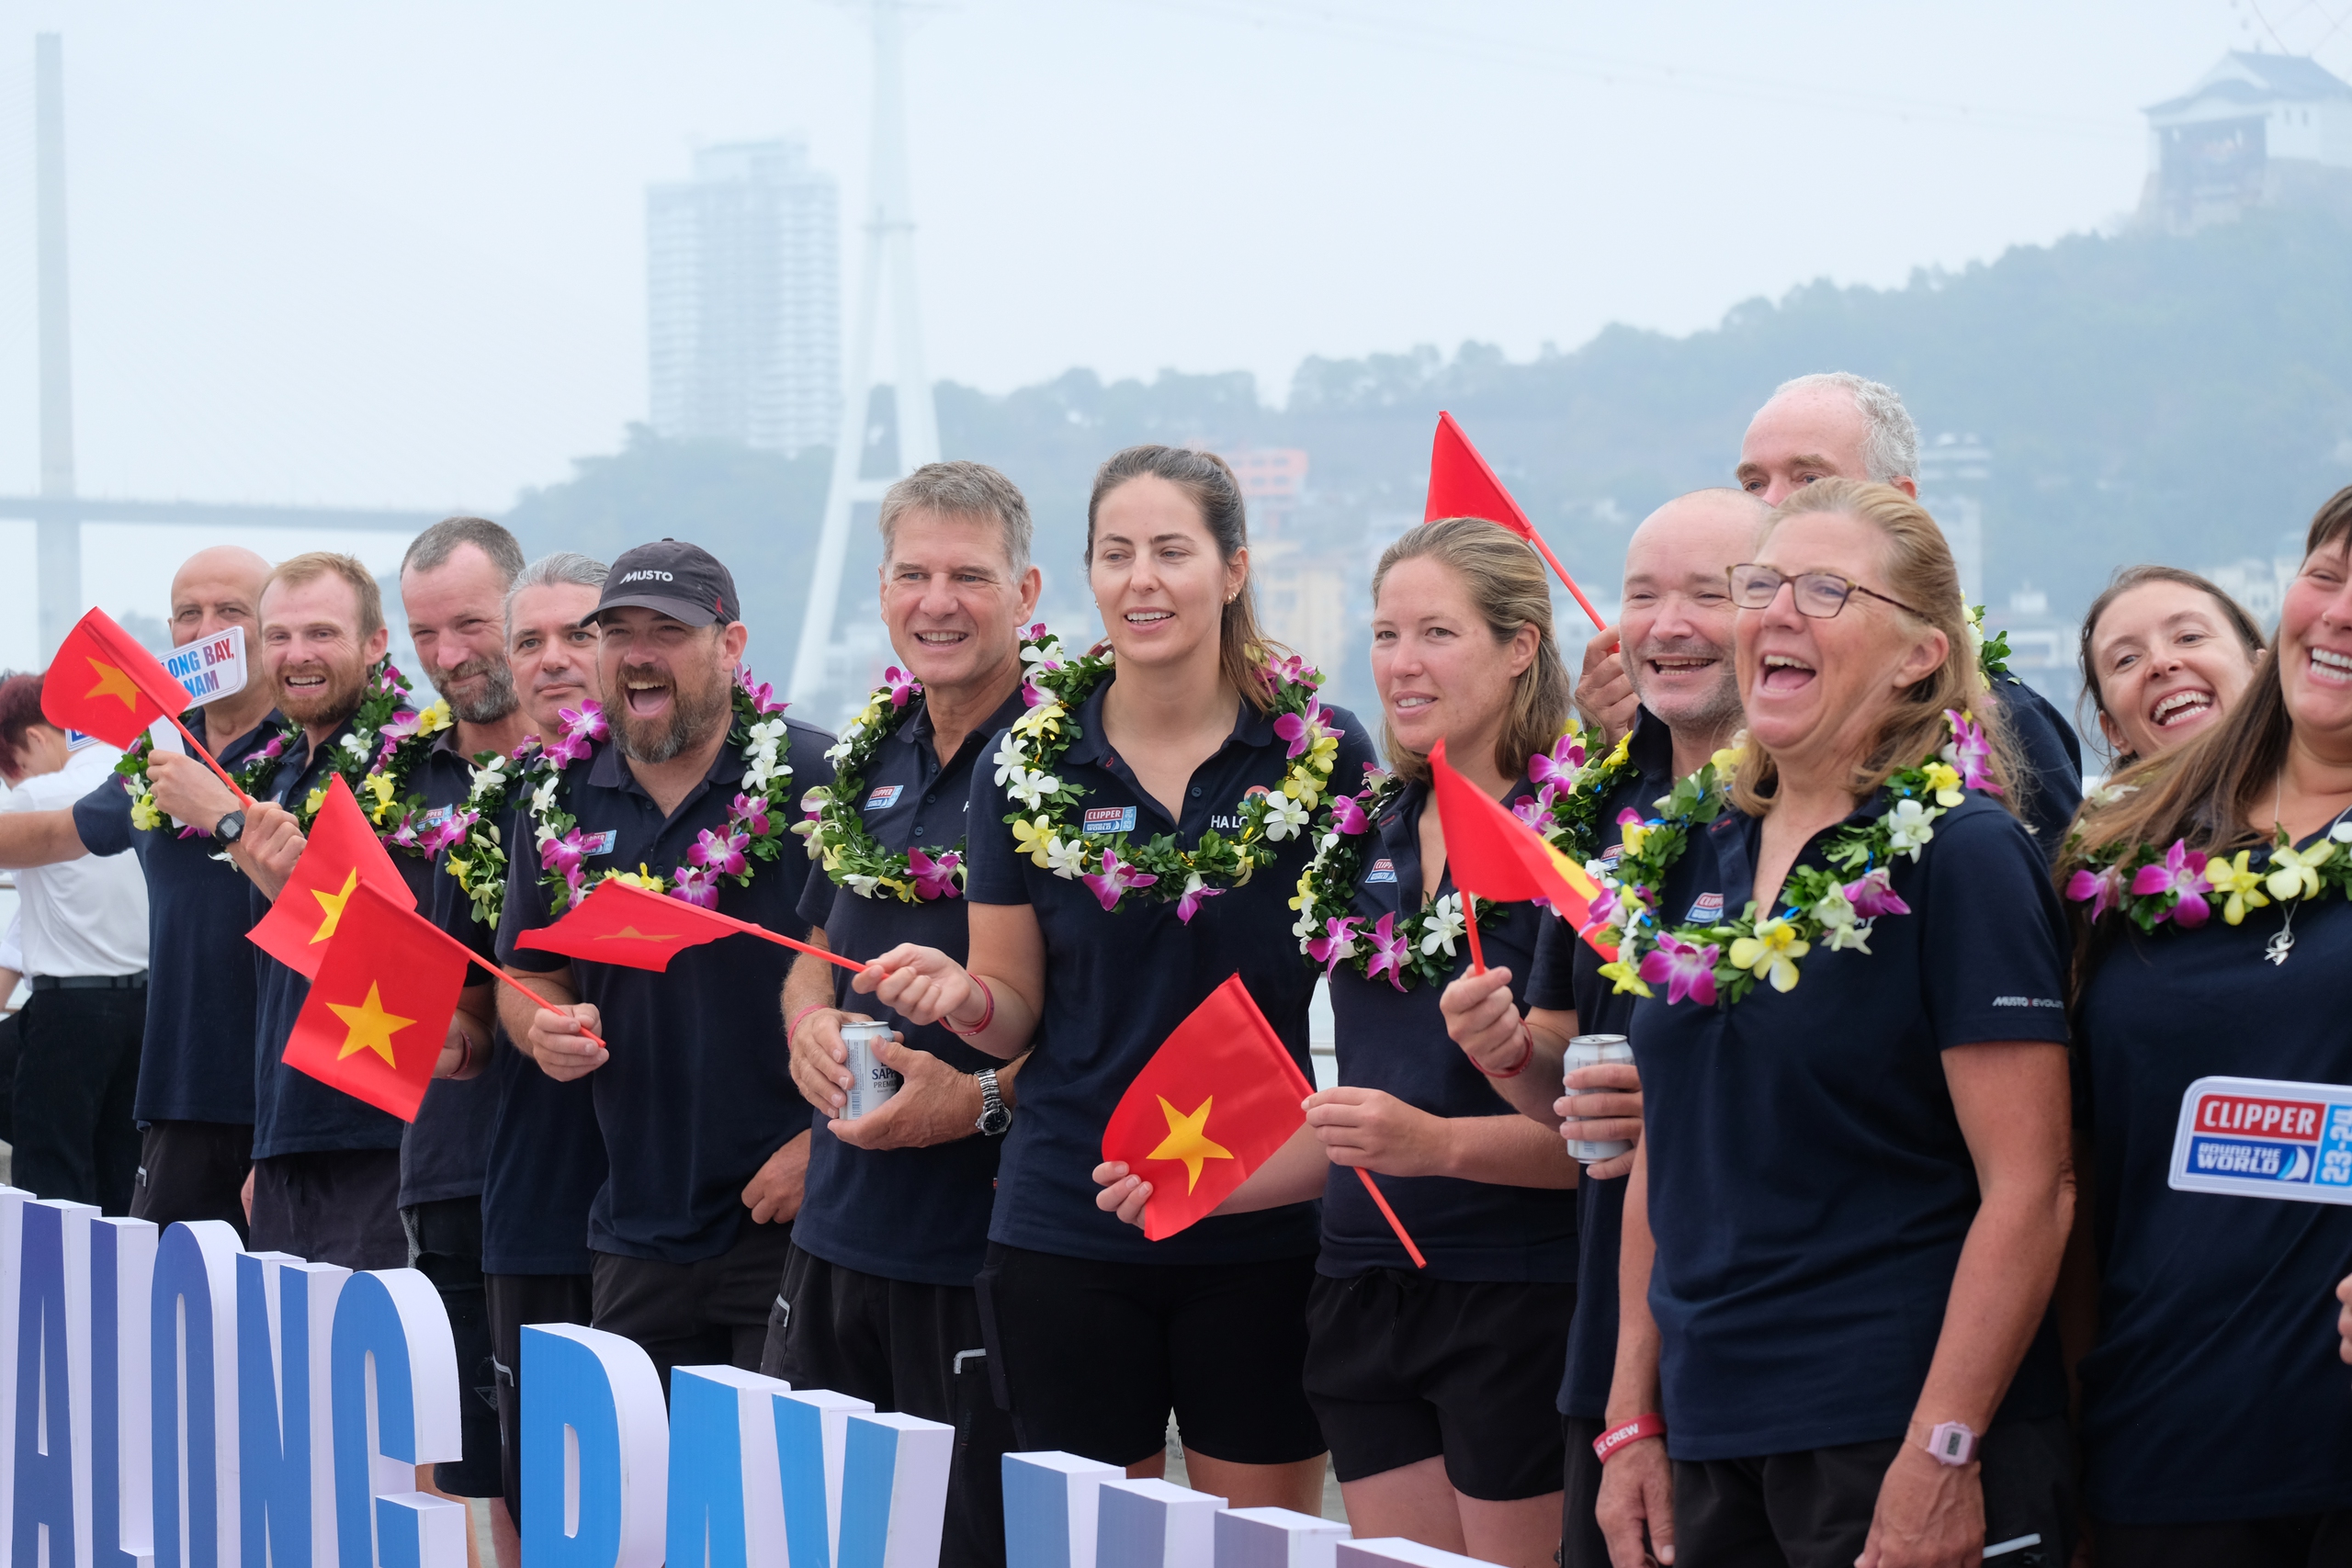 Gần 400 thủy thủ tham dự giải Clipper race được chào đón nồng hậu tại Hạ Long- Ảnh 2.